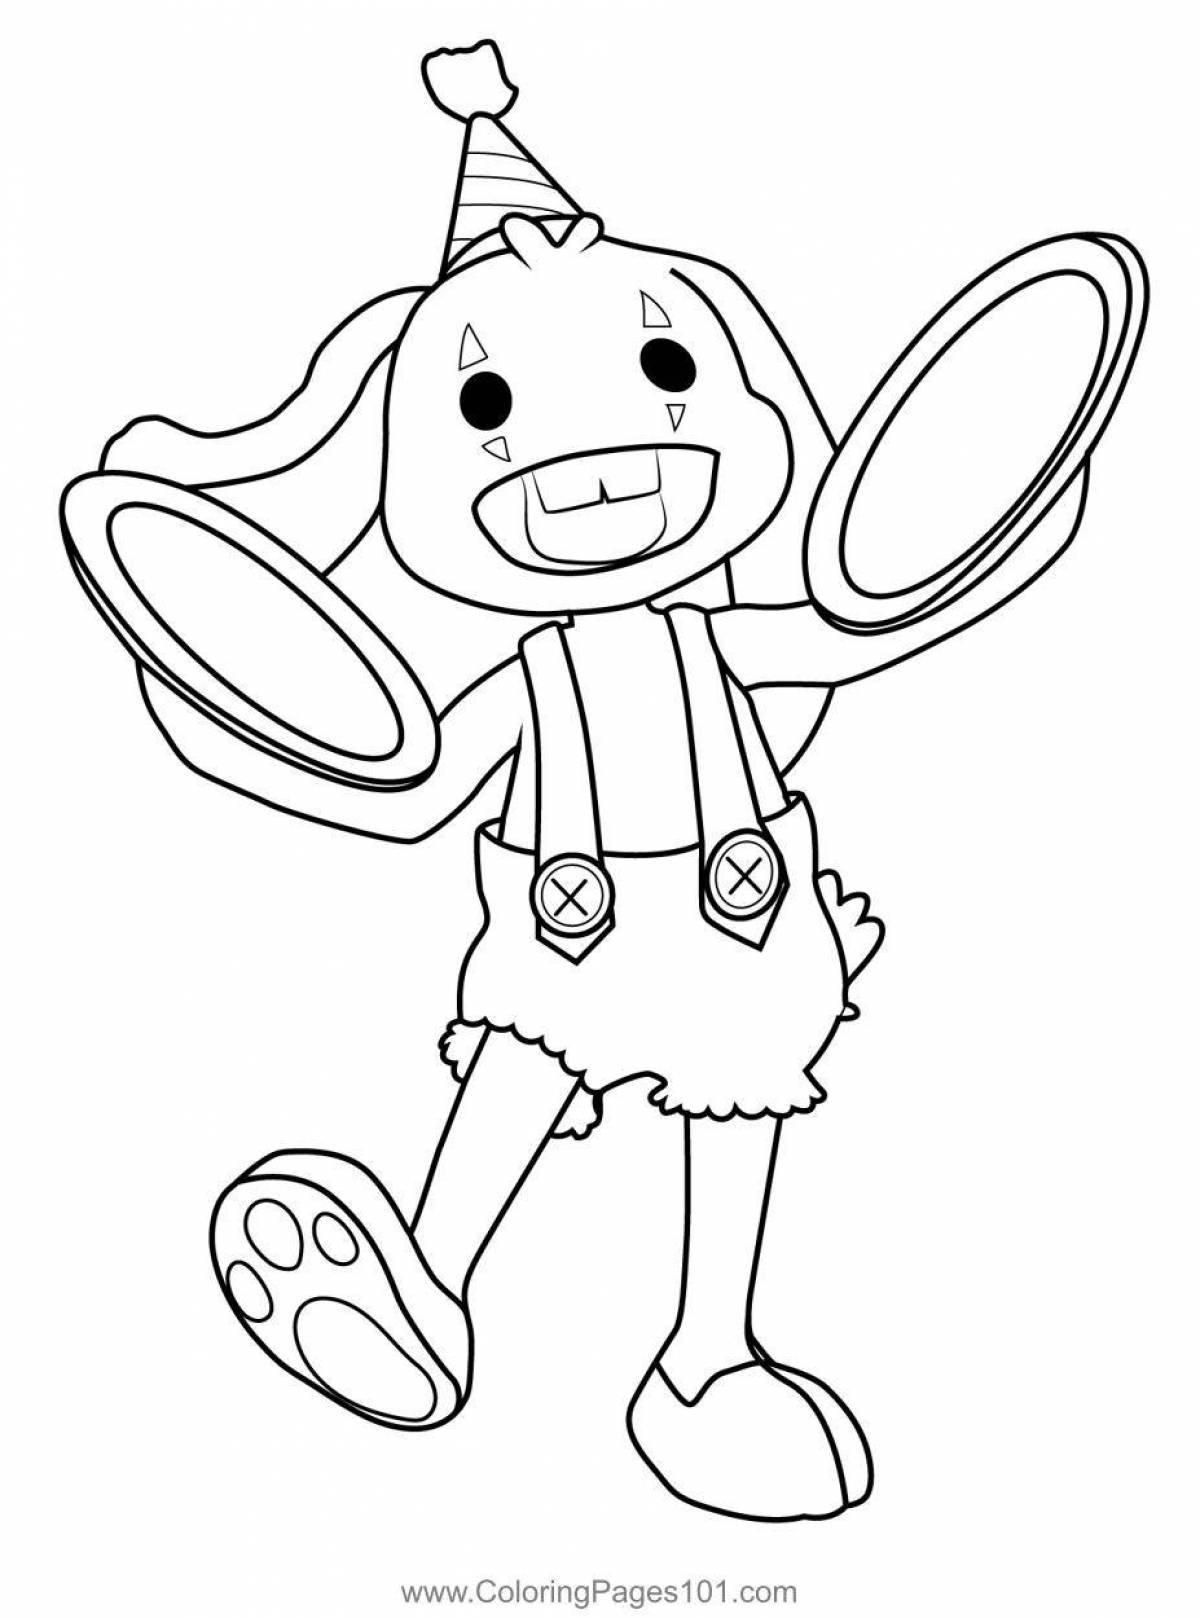 Coloring cute bonzo bunny